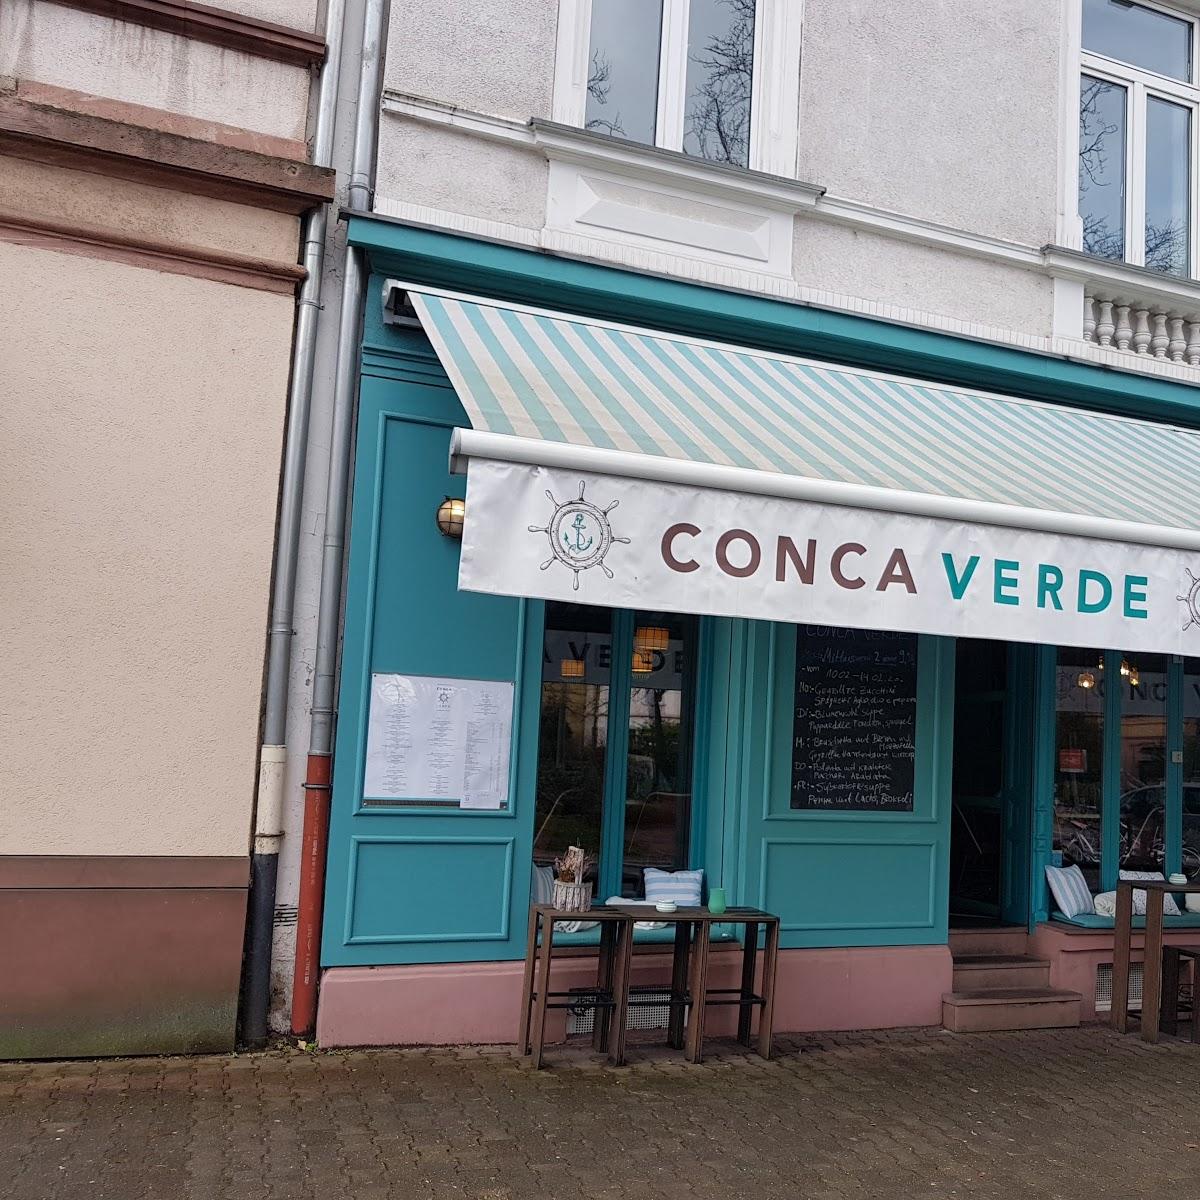 Restaurant "Conca Verde Ristorante" in Frankfurt am Main